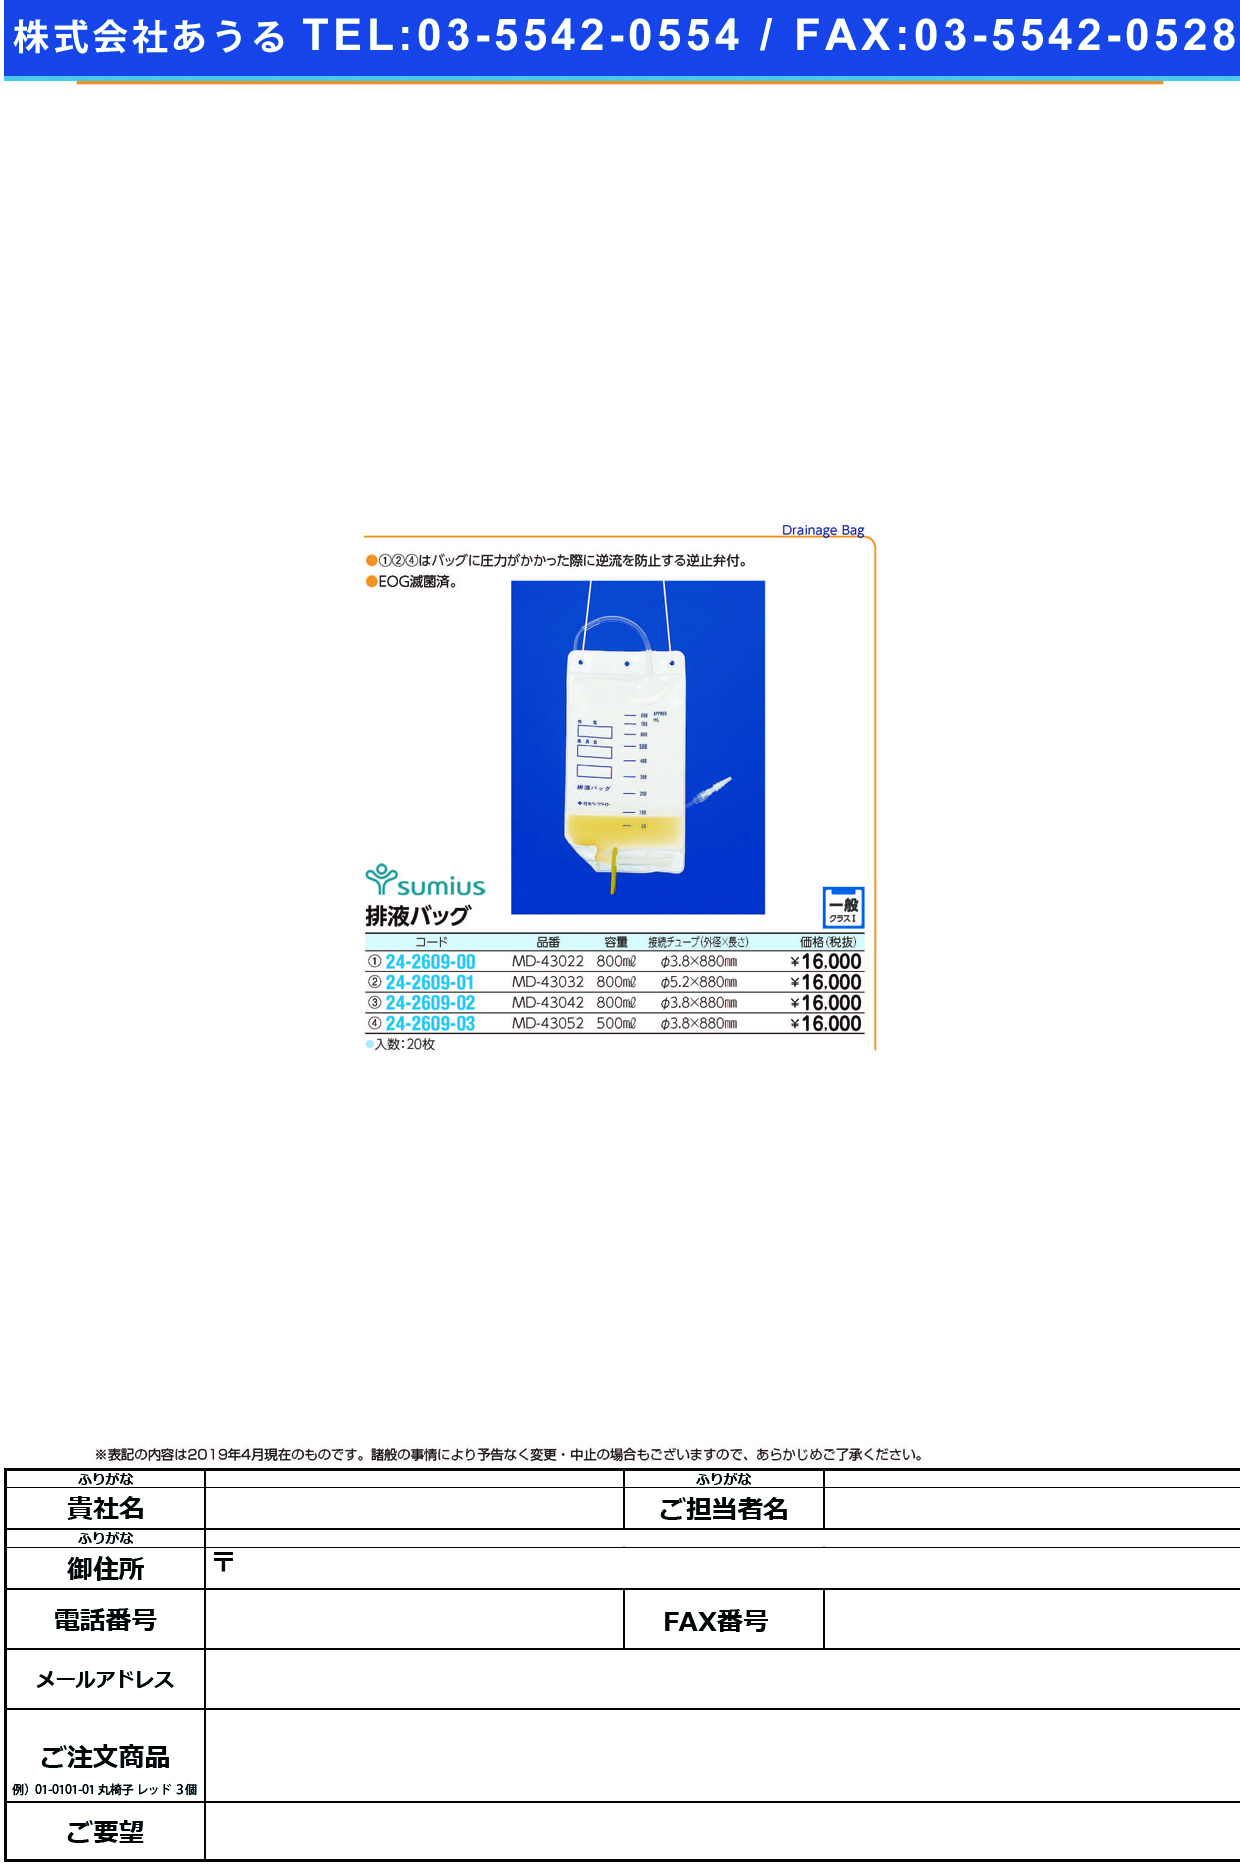 (24-2609-00)排液バッグ８００ｍｌ MD-43022(20ｲﾘ) ﾊｲｴｷﾊﾞｯｸﾞ(住友ベークライト)【1箱単位】【2019年カタログ商品】